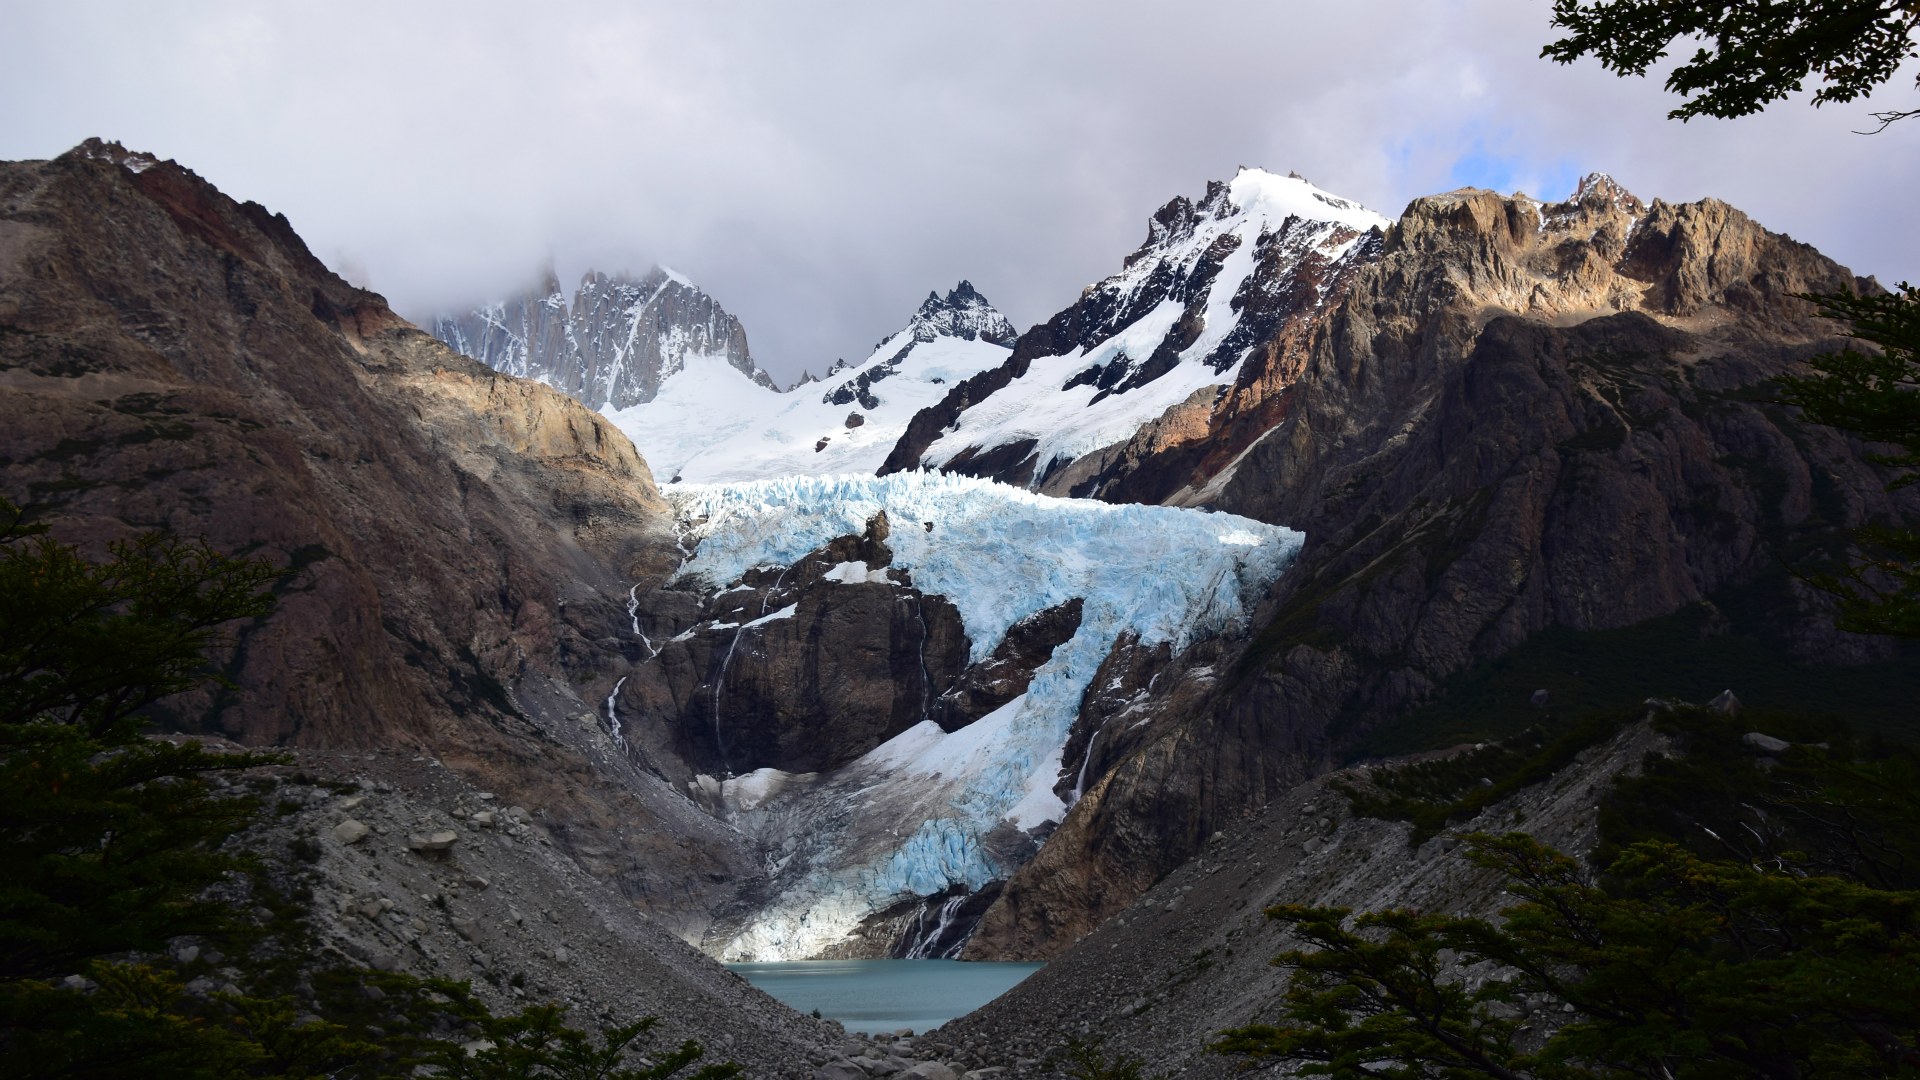 Piedras Blancas Glacier and Lake, Los Glaciares National Park